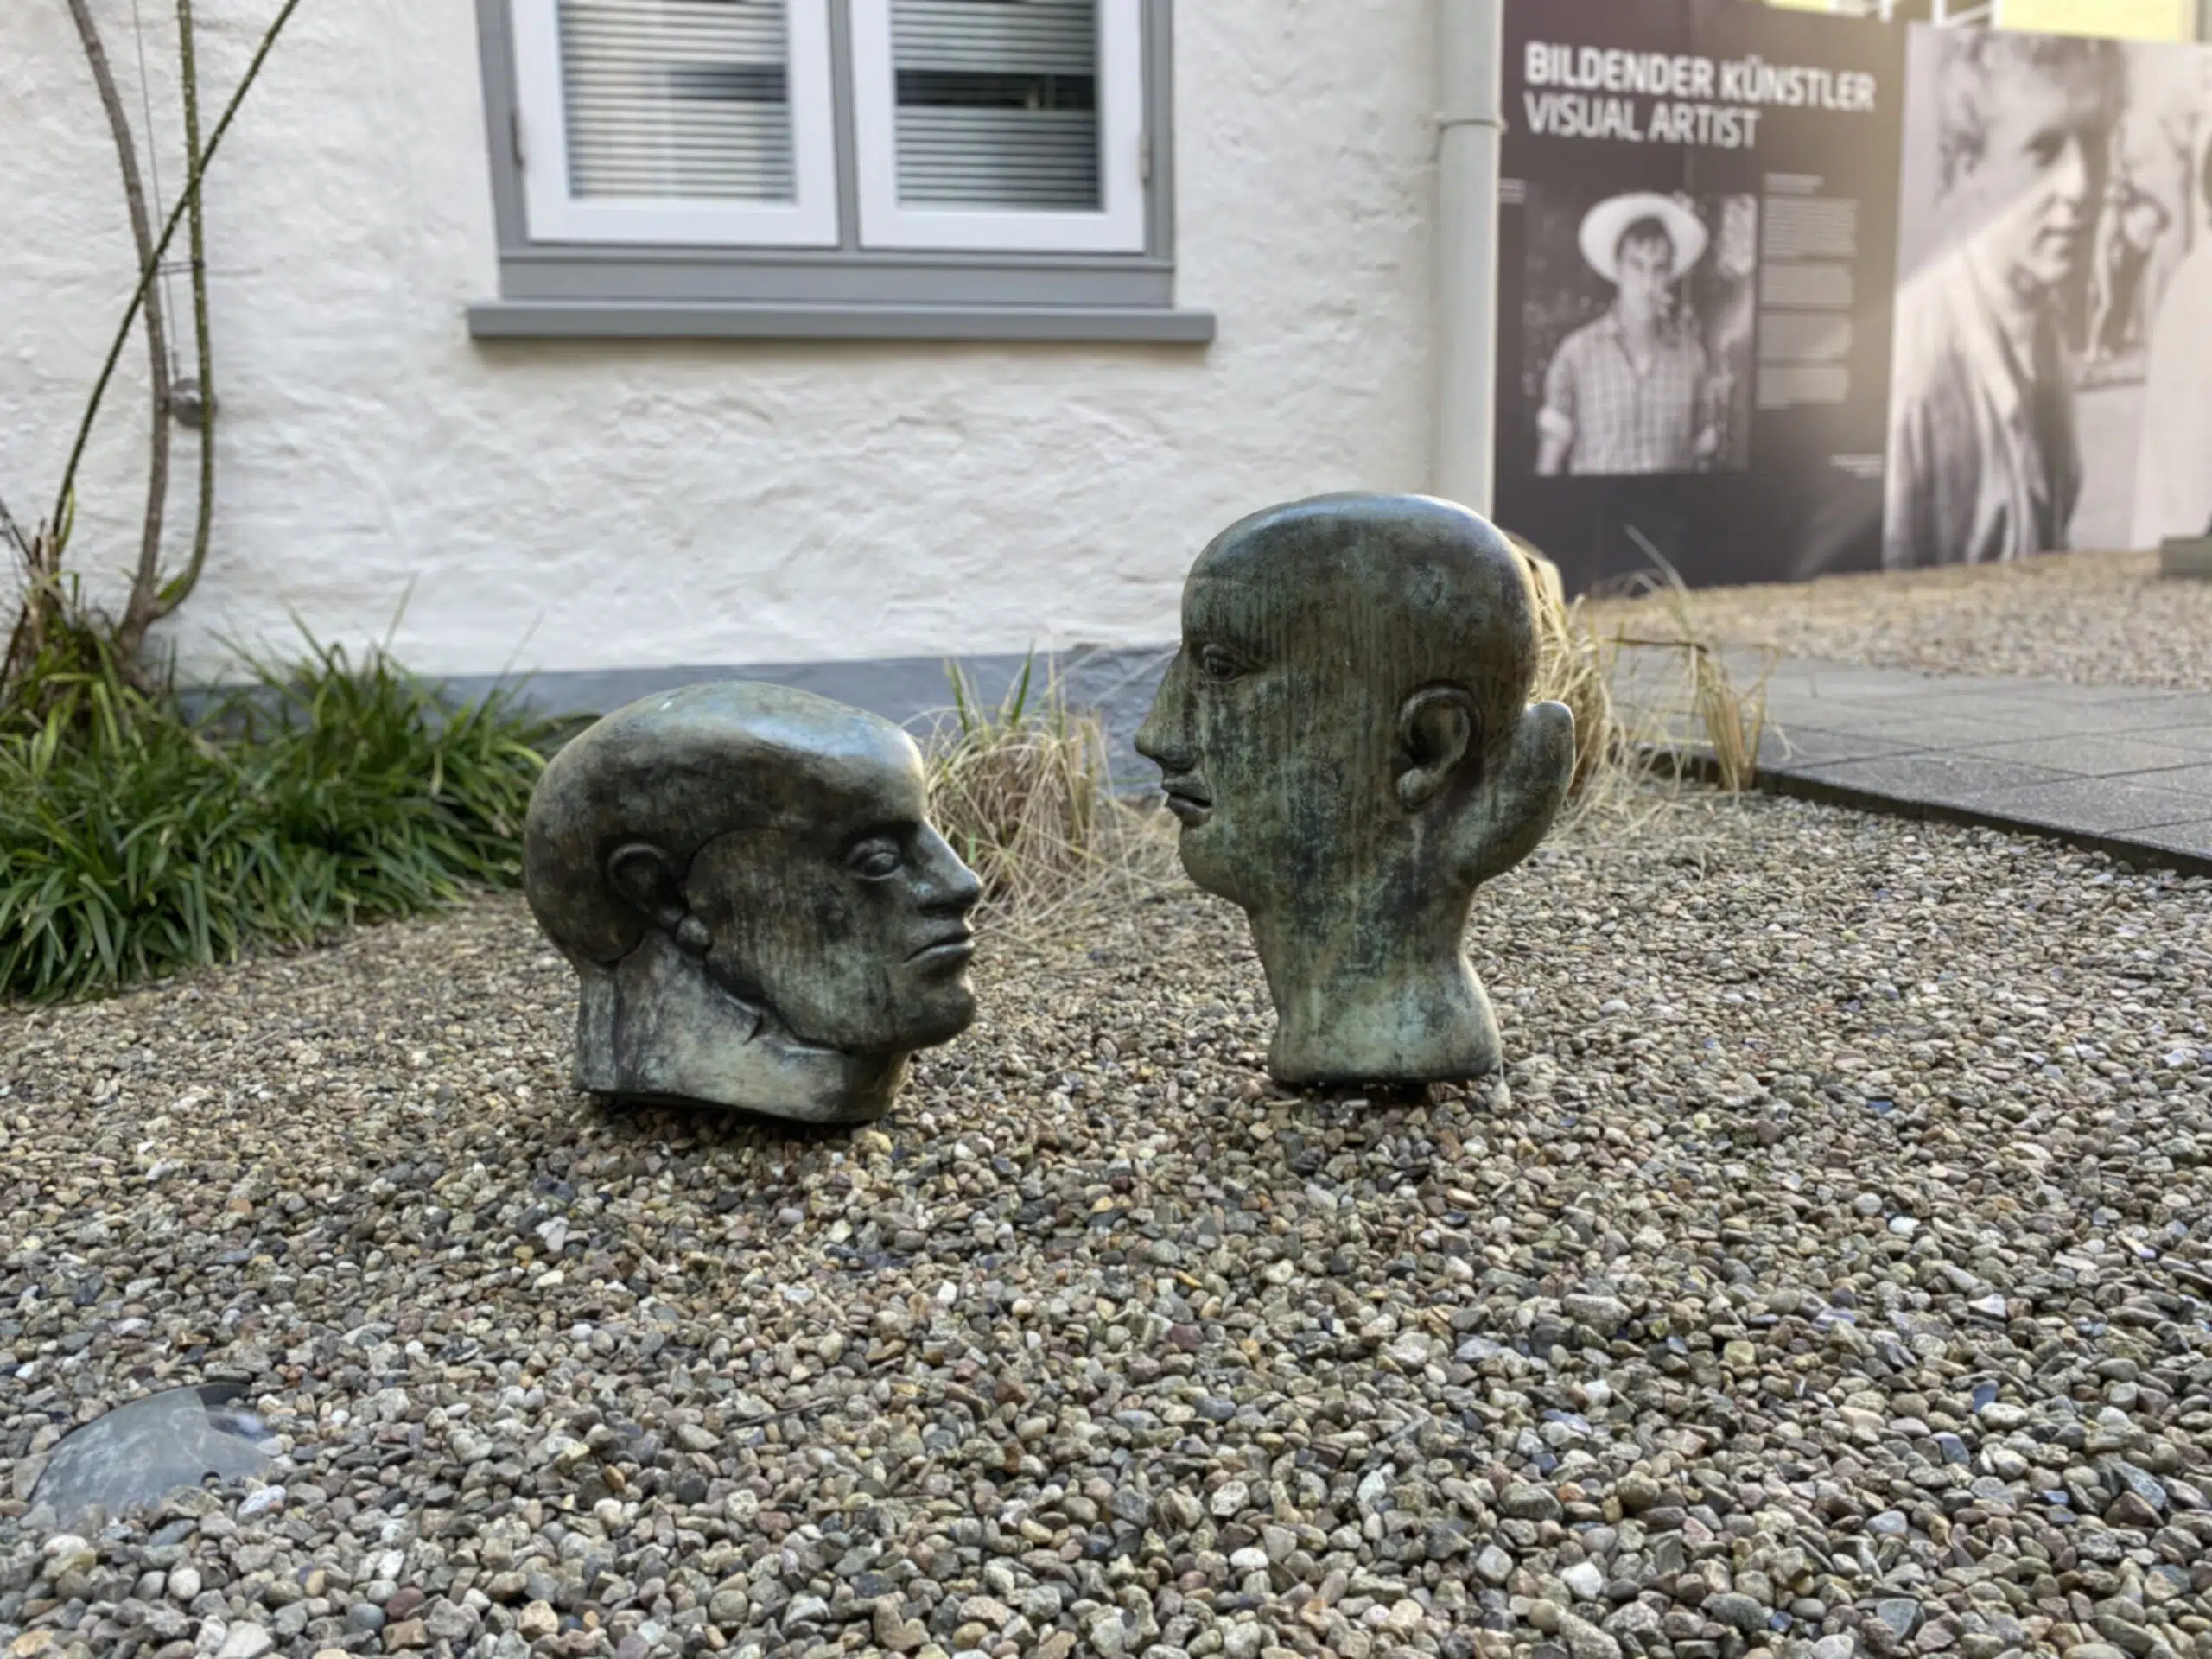 Günter Grass Ausstellung in Lübeck